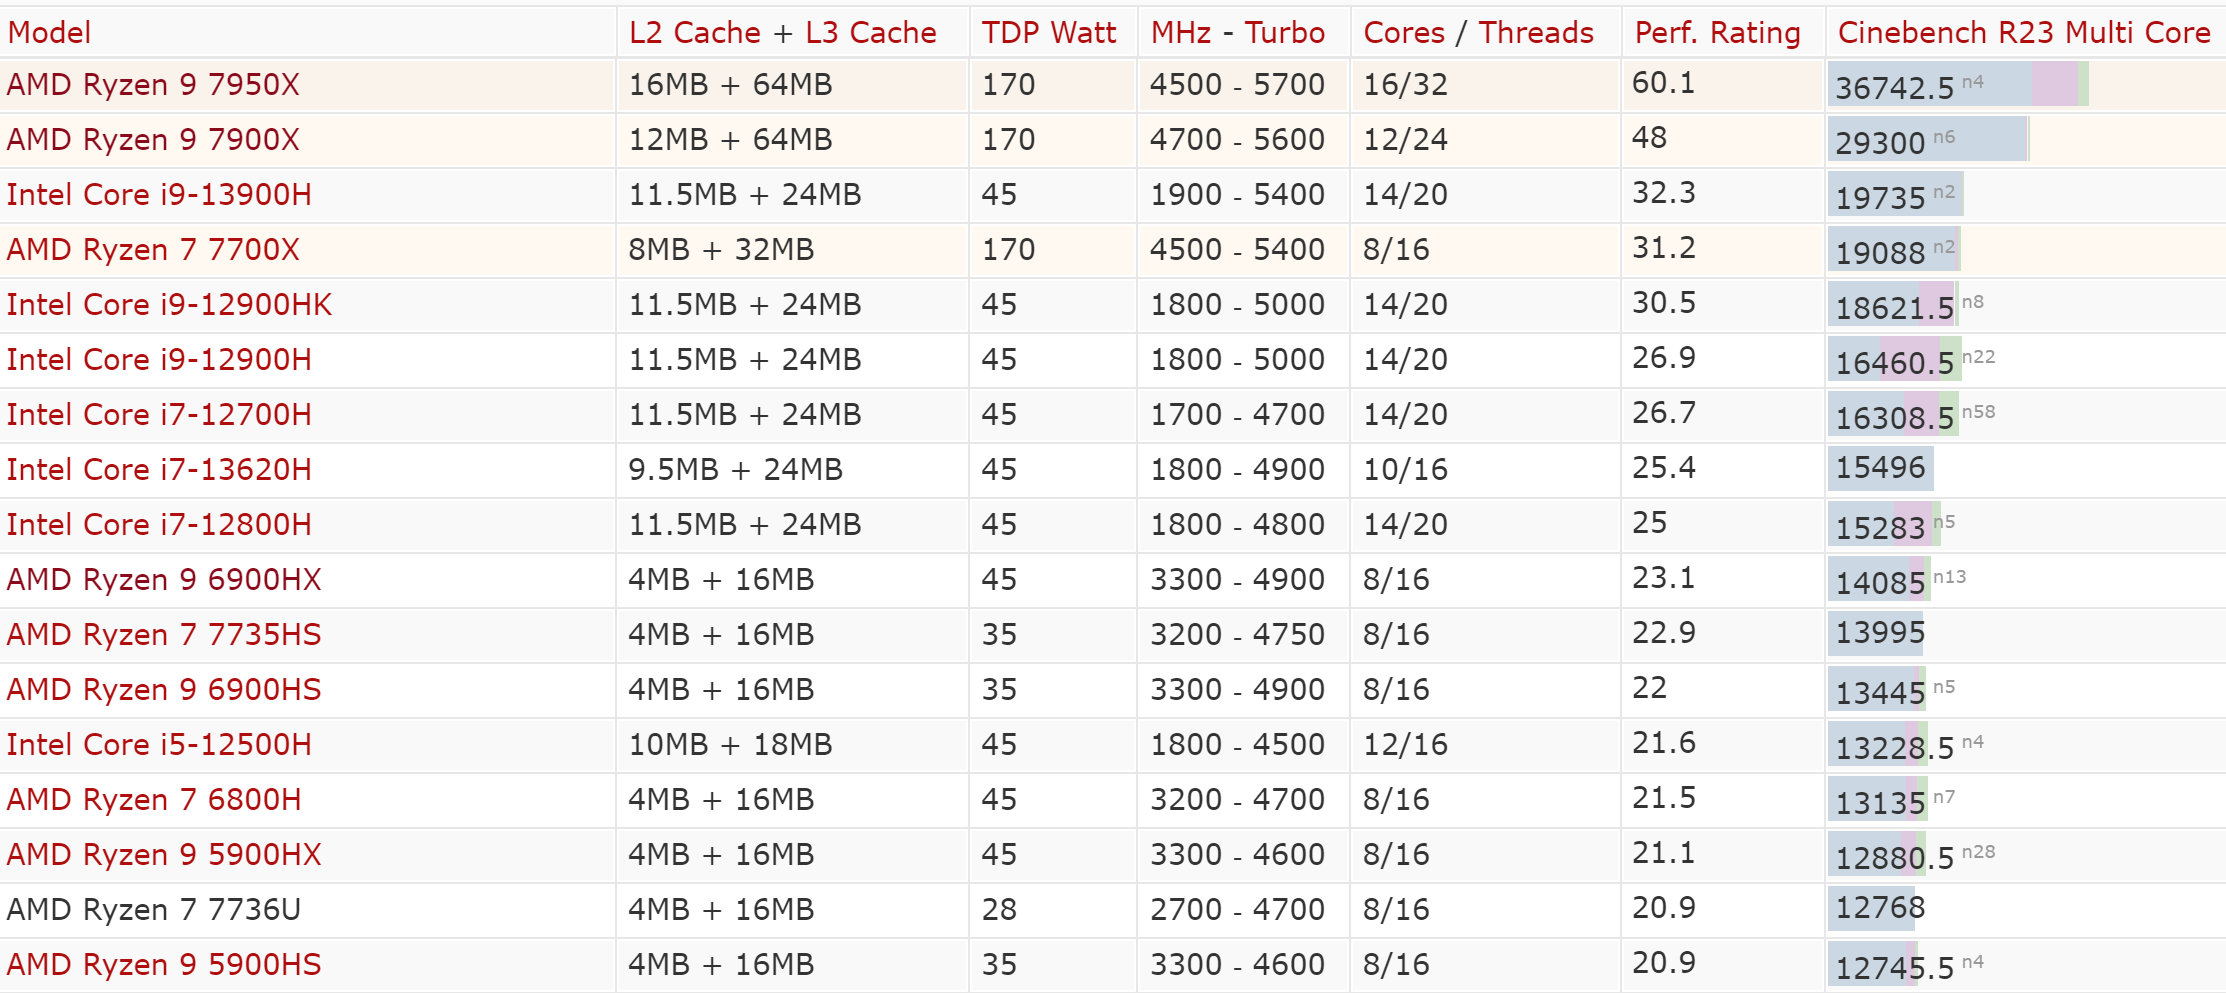 cinebnech laptop cpu หลุดผลทดสอบ AMD Ryzen 7 7840U รุ่นกินไฟต่ำในรหัส Phoenix รุ่นใหม่ล่าสุดแรงกว่า Ryzen 9 6900HX 